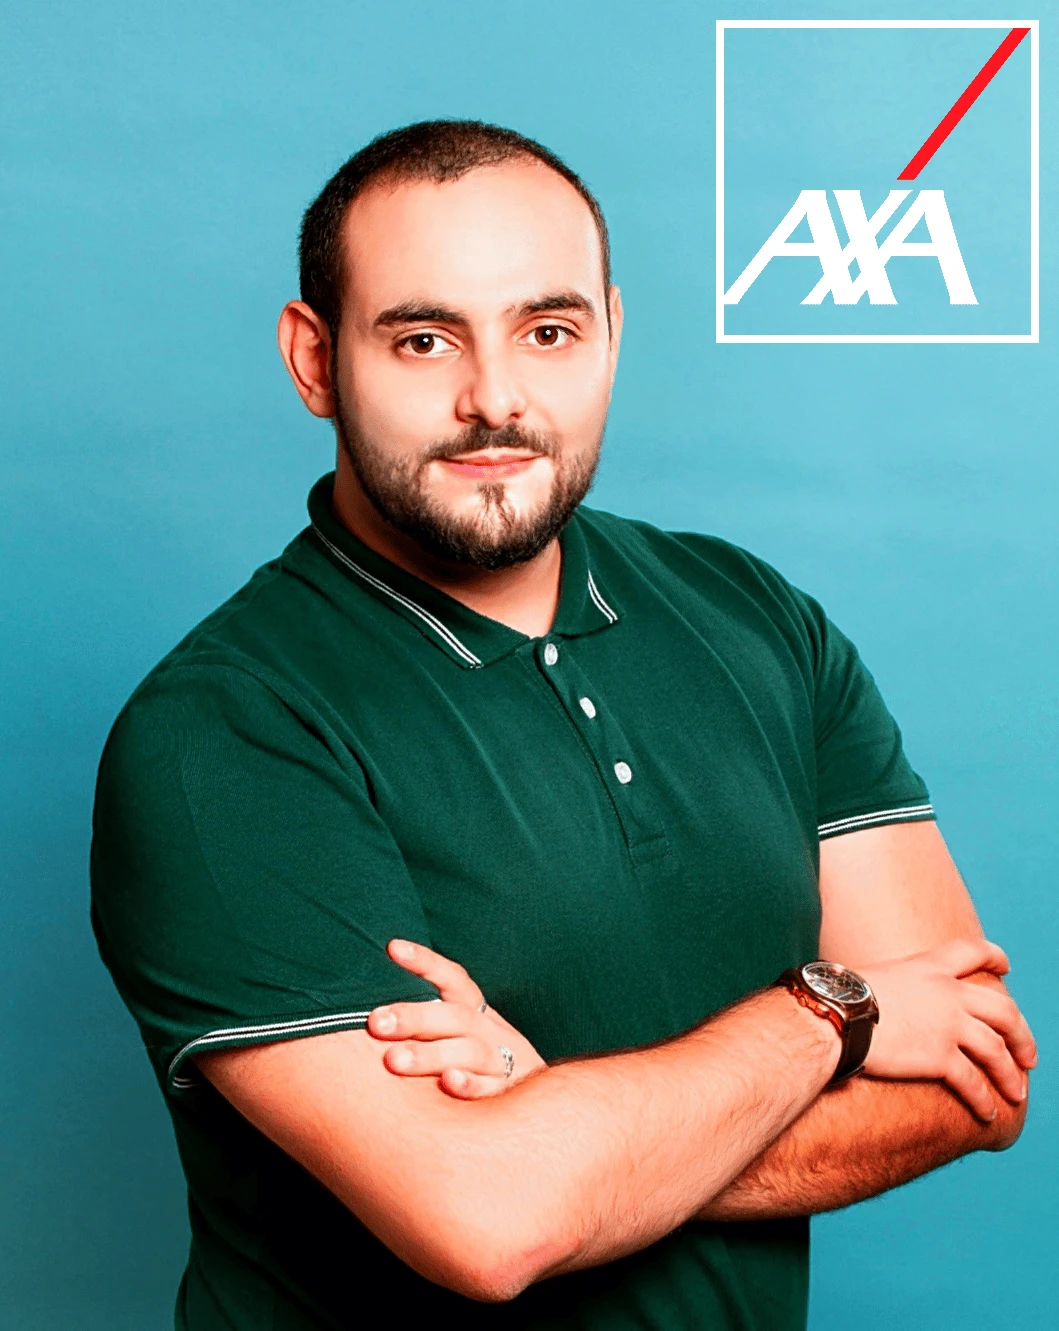 [INTERVIEW] Anthony BOSU, Agent d’assurance AXA